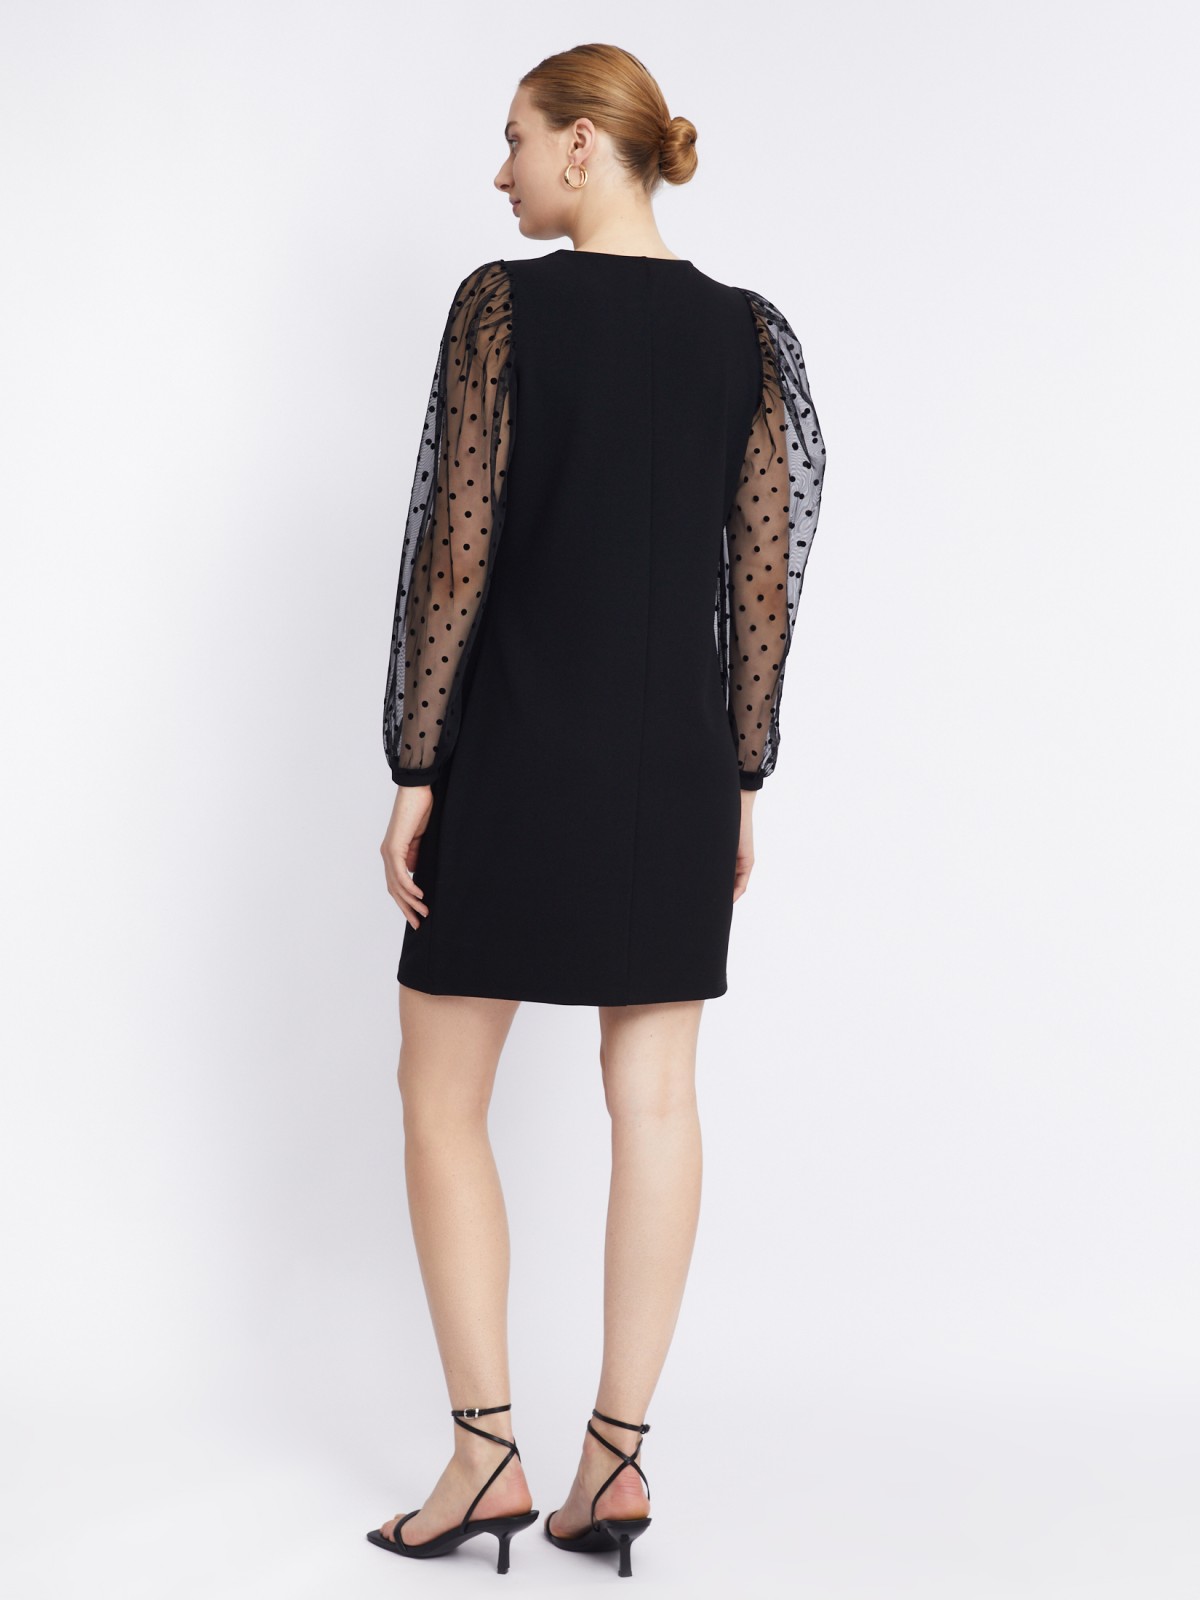 Платье длины мини с акцентными рукавами zolla 223318159111, цвет черный, размер S - фото 6